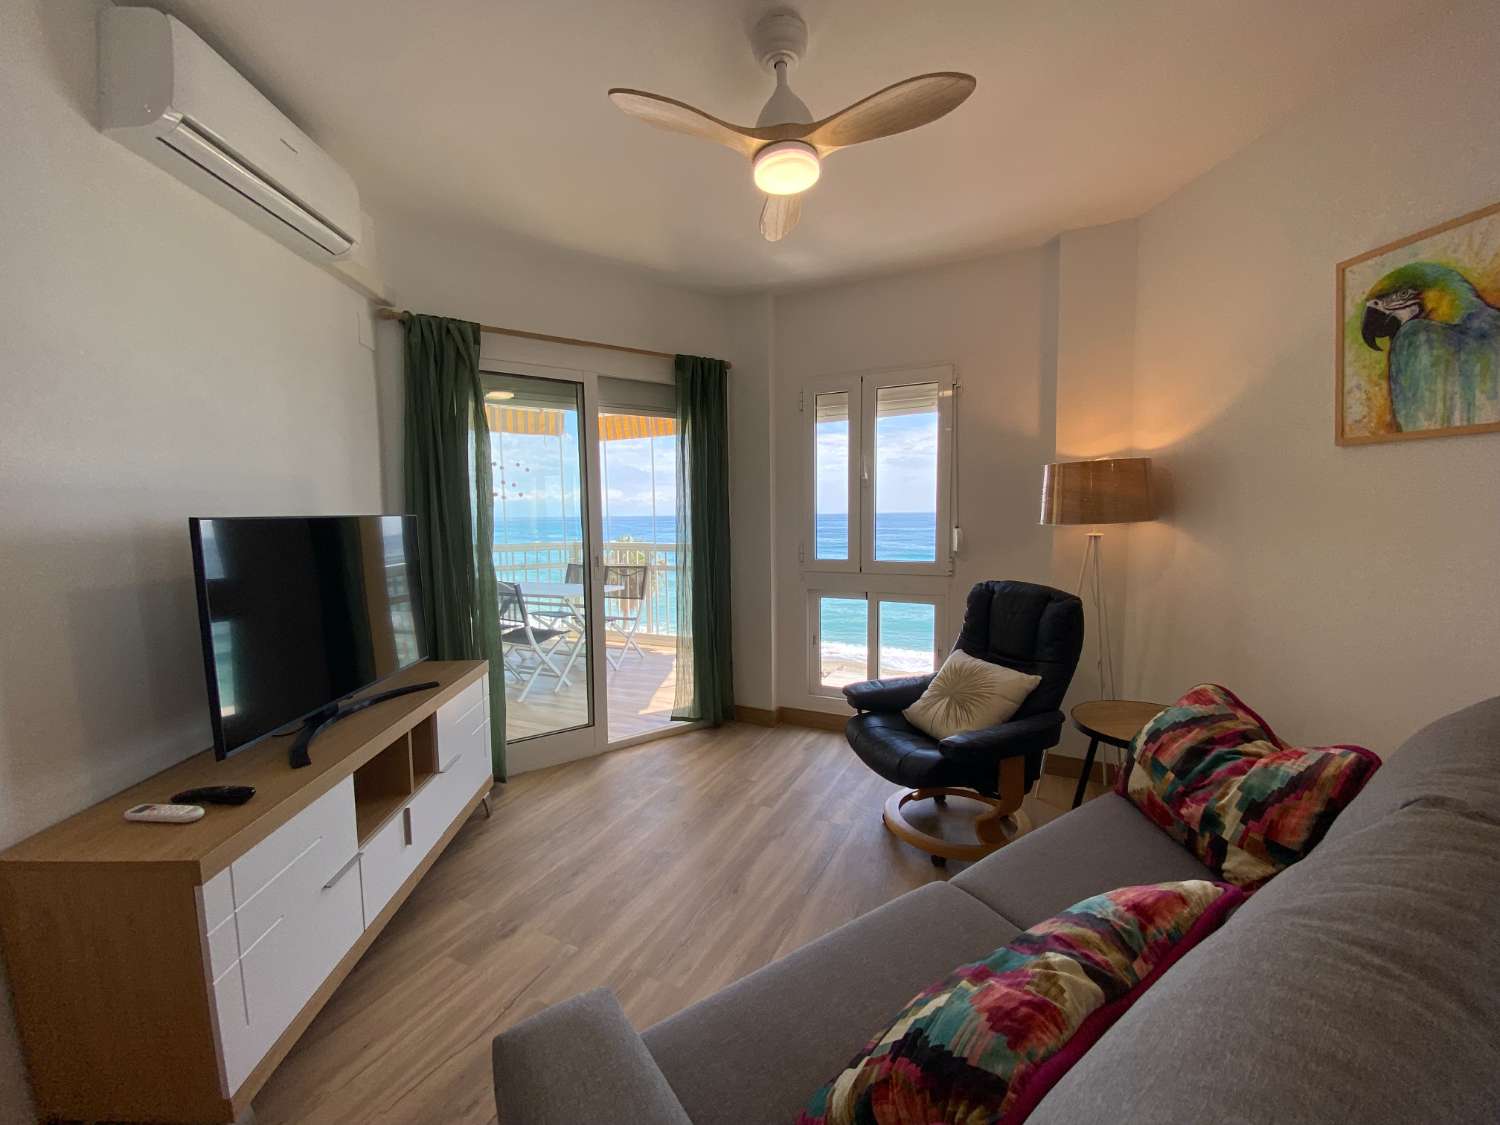 Incroyable appartement rénové avec vue panoramique sur la mer : La maison idéale pour les amoureux de la plage !&quot;